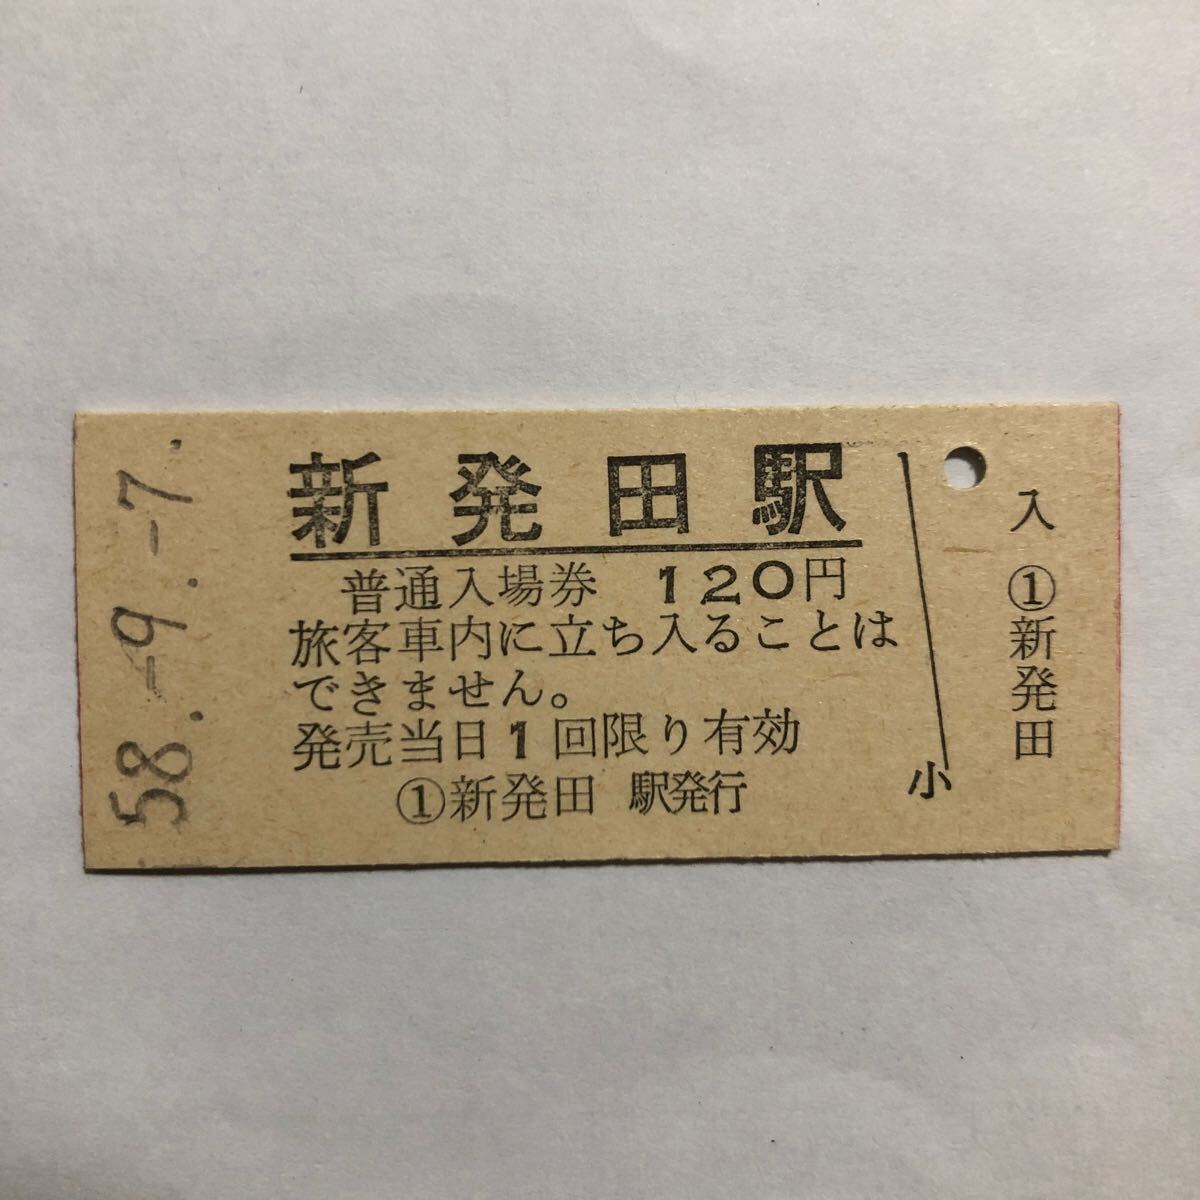 国鉄 新発田120円券入場券_画像1